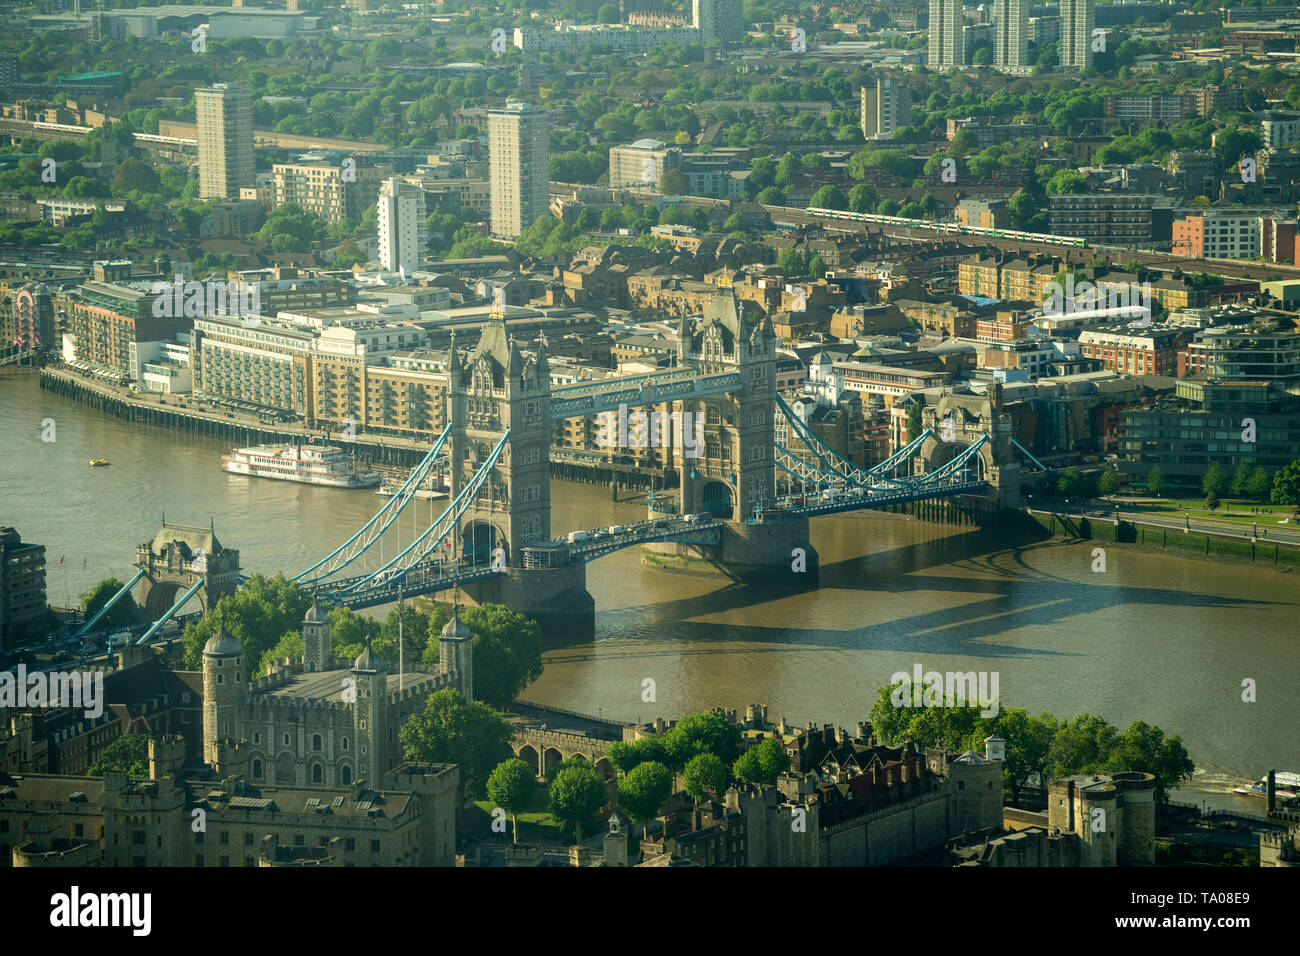 Blick auf die Tower Bridge ab Searcys auf der obersten Etage des Gherkin Building in London gesehen. Foto Datum: Dienstag, 21. Mai 2019. Foto: Roger Garfiel Stockfoto